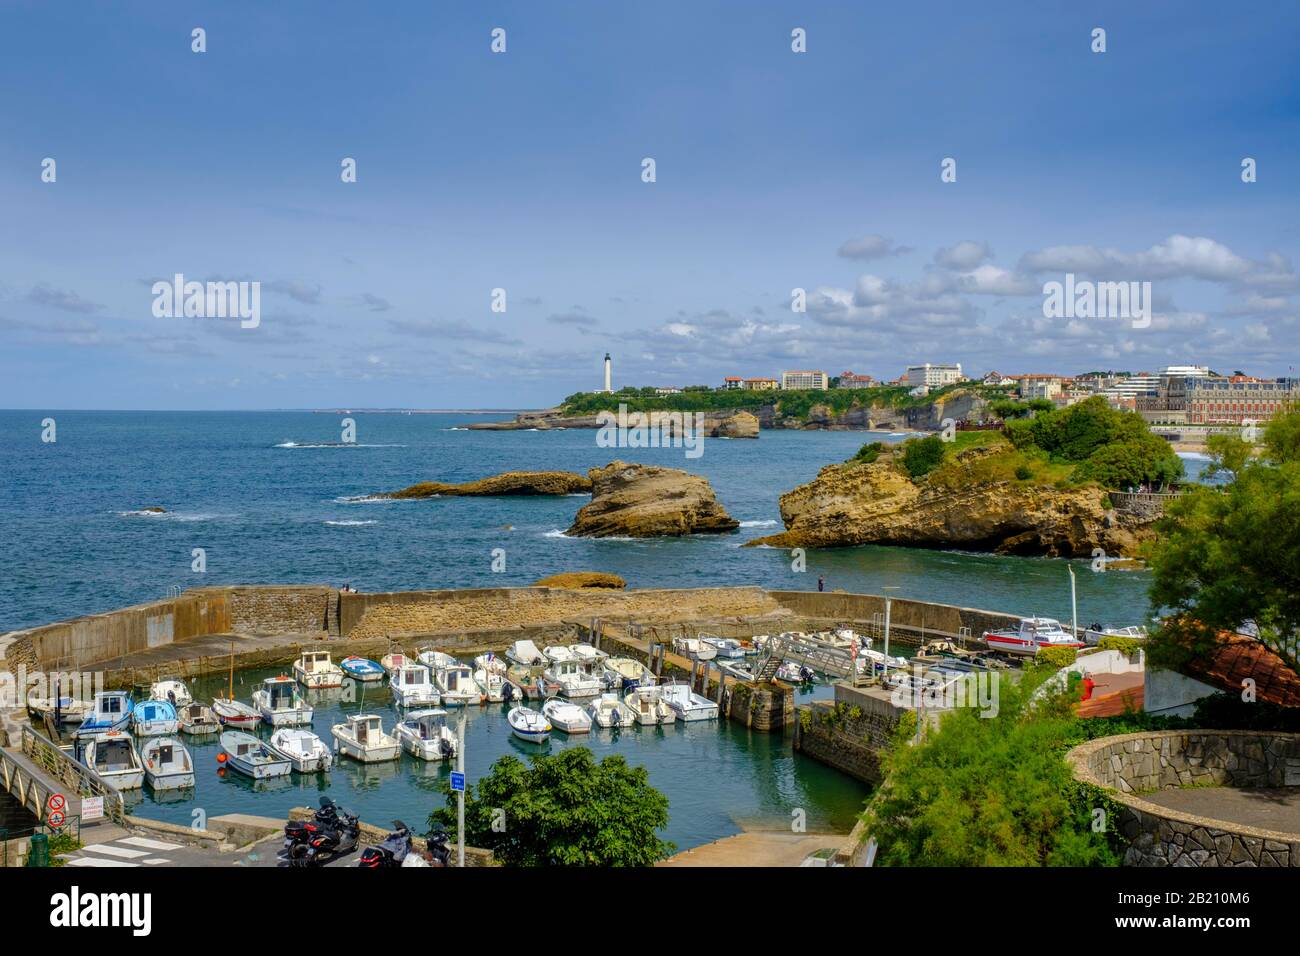 Fishing port, Le Port des Pecheurs, Coast, Biarritz, Cote Basque, Aquitaine, Departement Pyrenees-Atlantiques, Nouvelle-Aquitaine, France Stock Photo